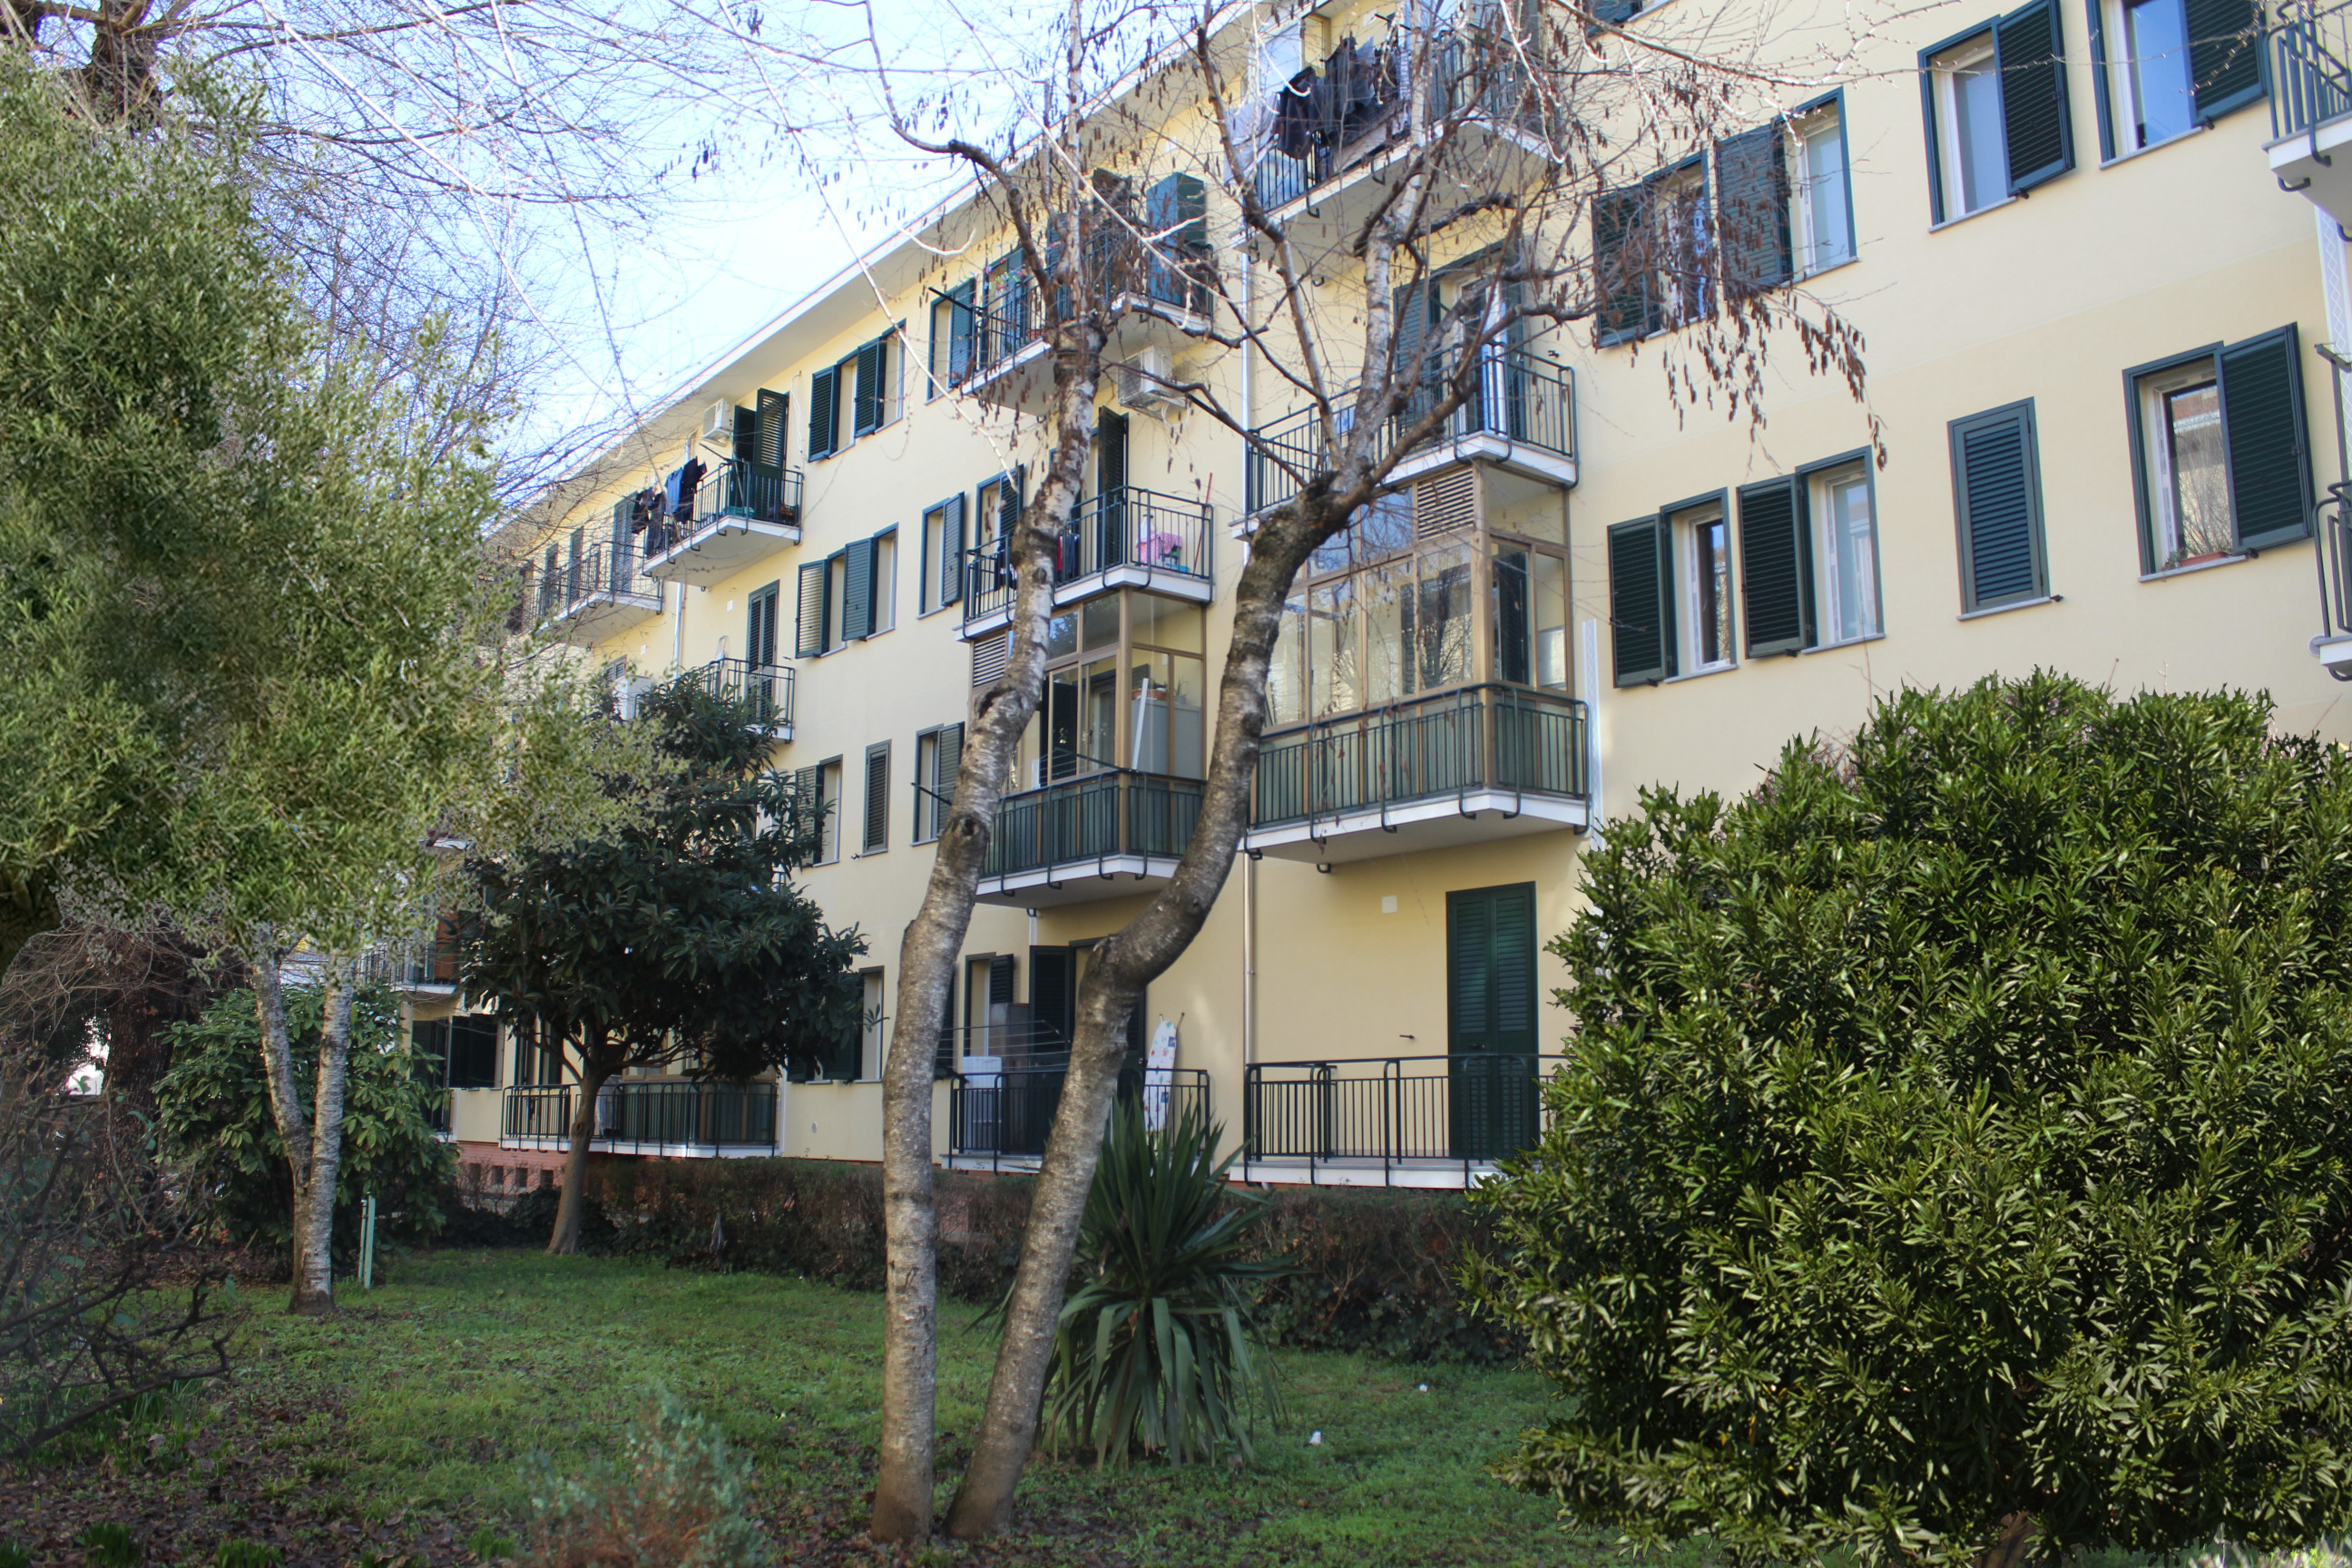 Grazioso appartamento - Via Cruto, Torino